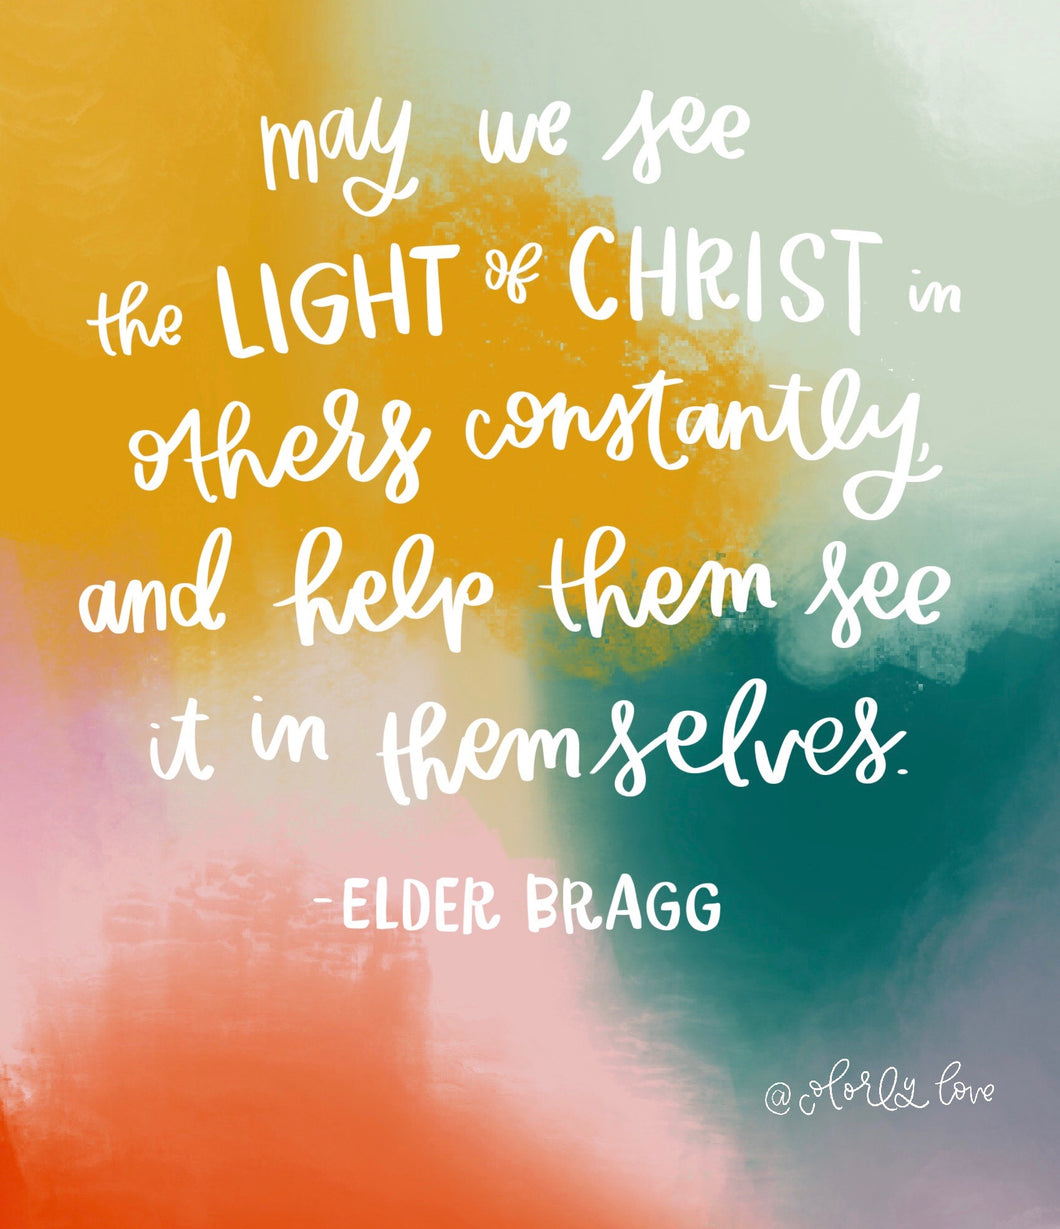 Elder Bragg Quote